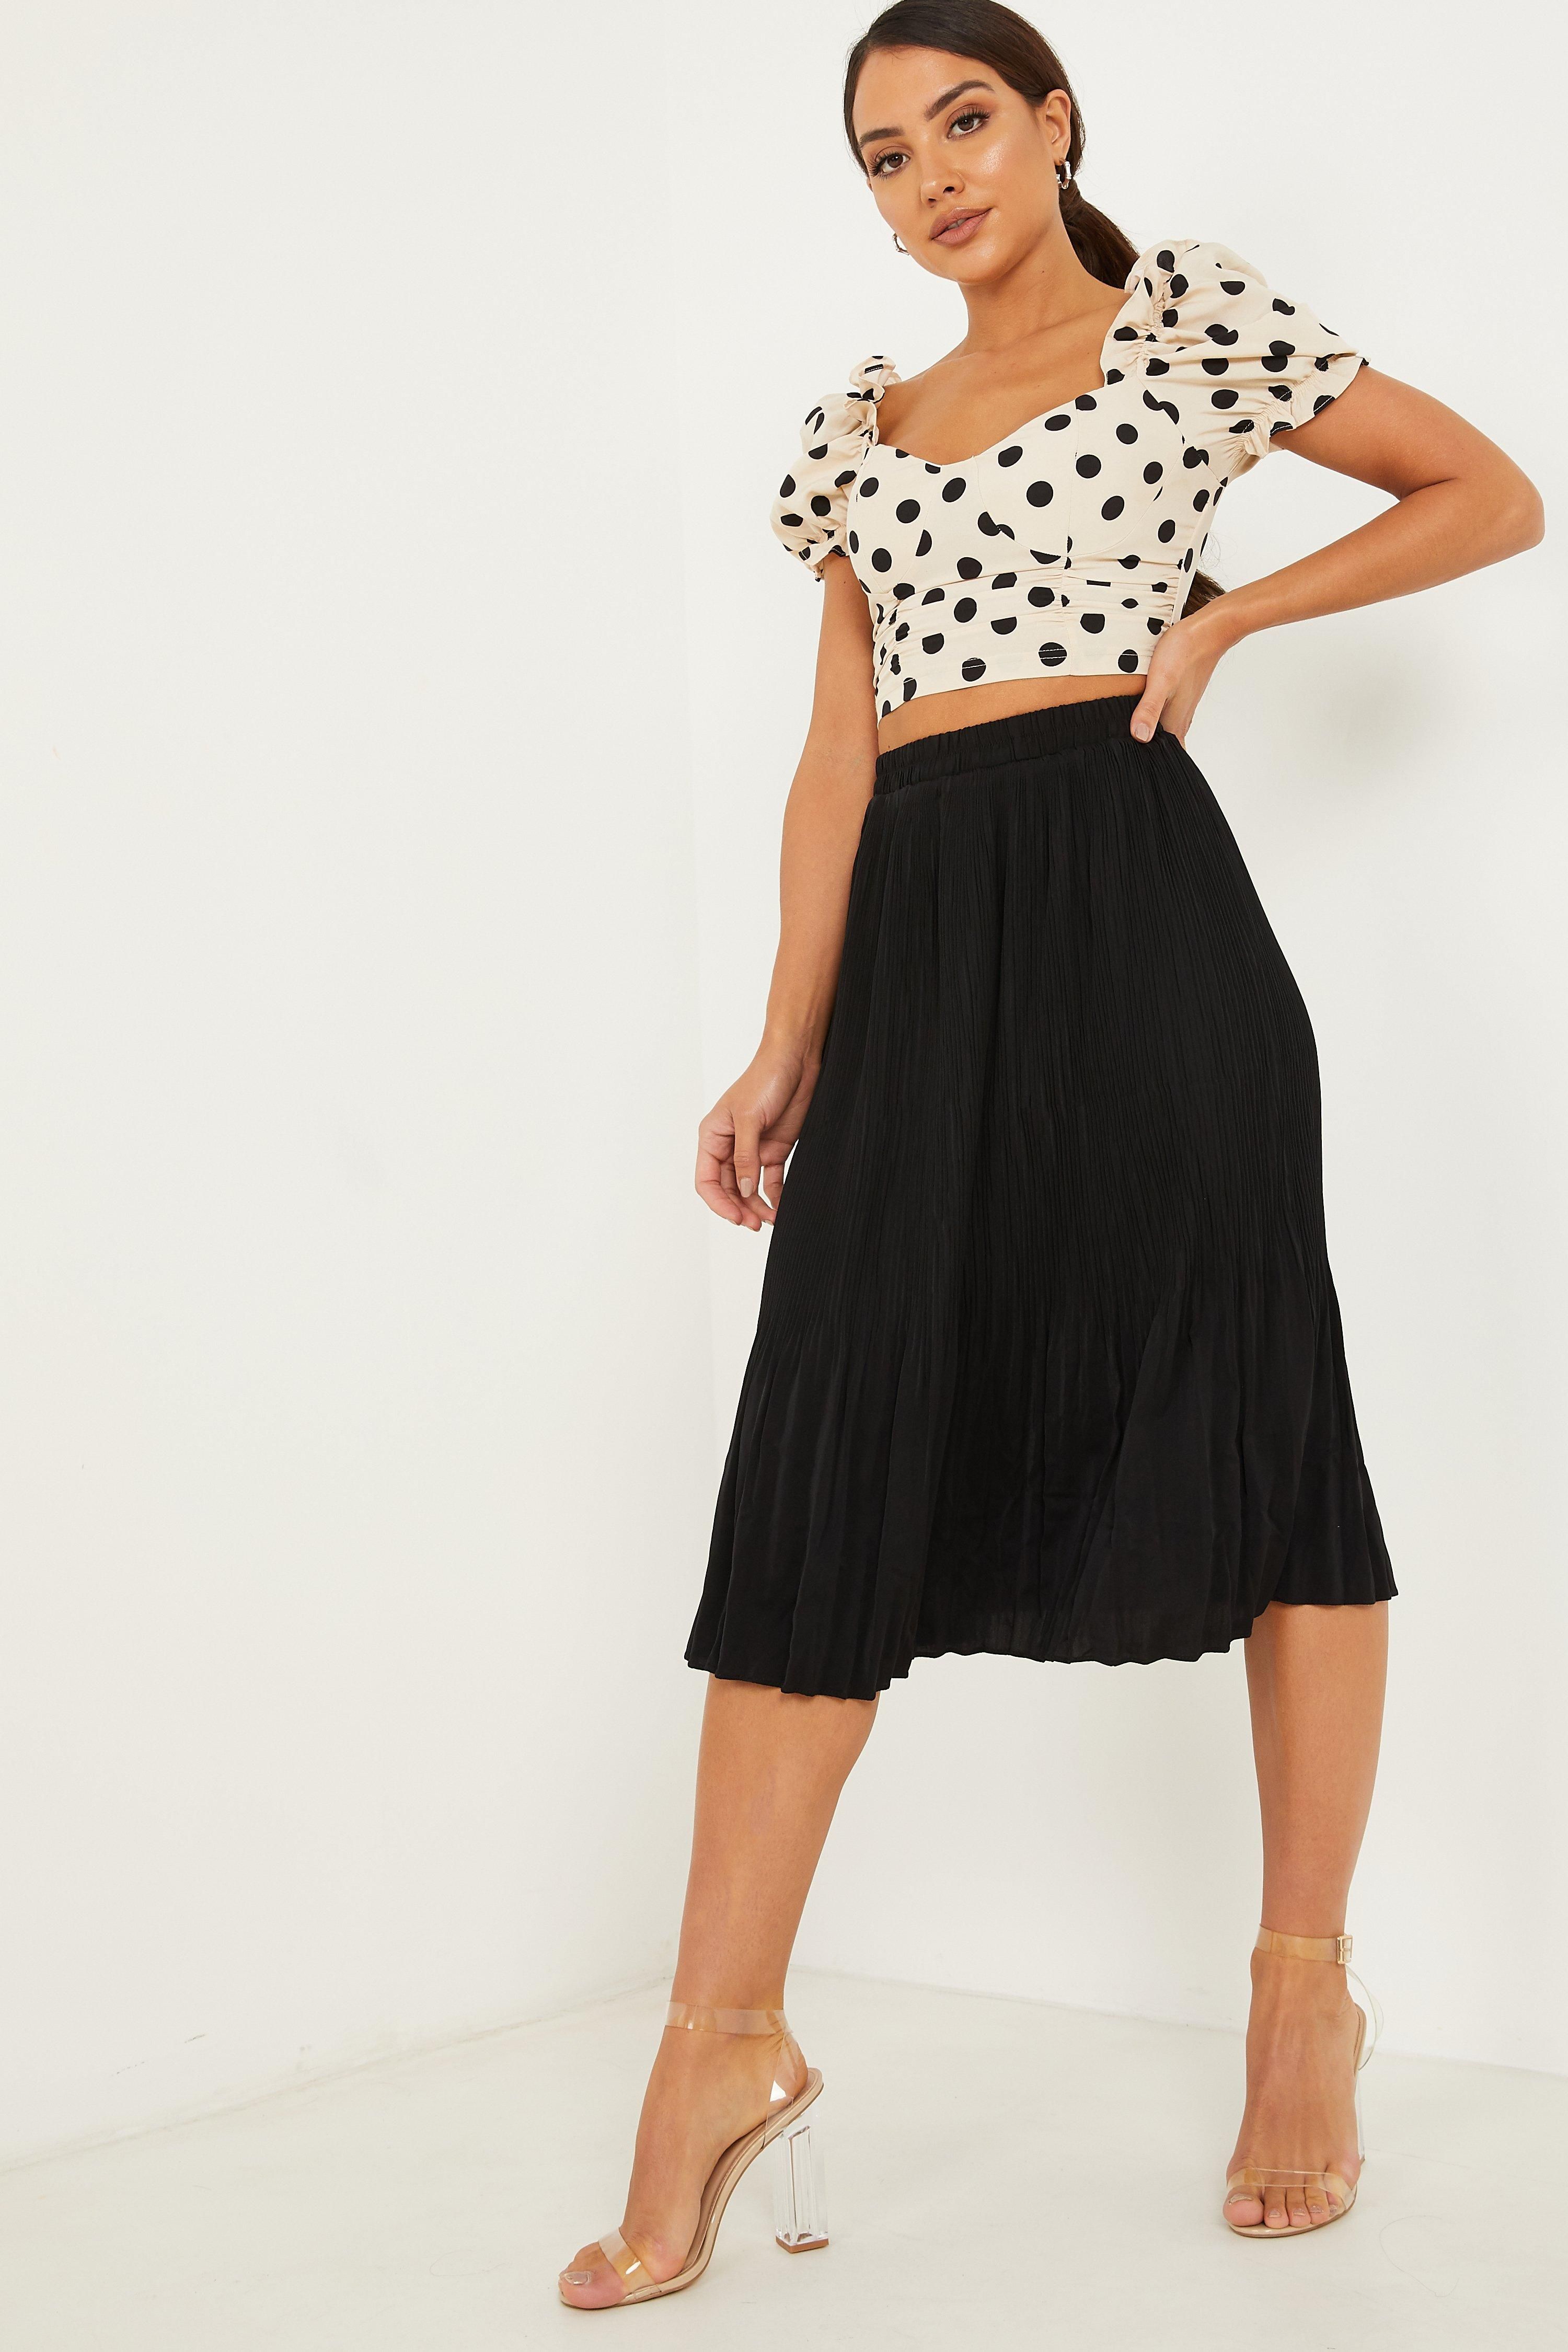 - Pleated skirt   - High waist  - Elasticated waistband  - Midi length  - Length: 78 cm approx  - Model height: 5' 7